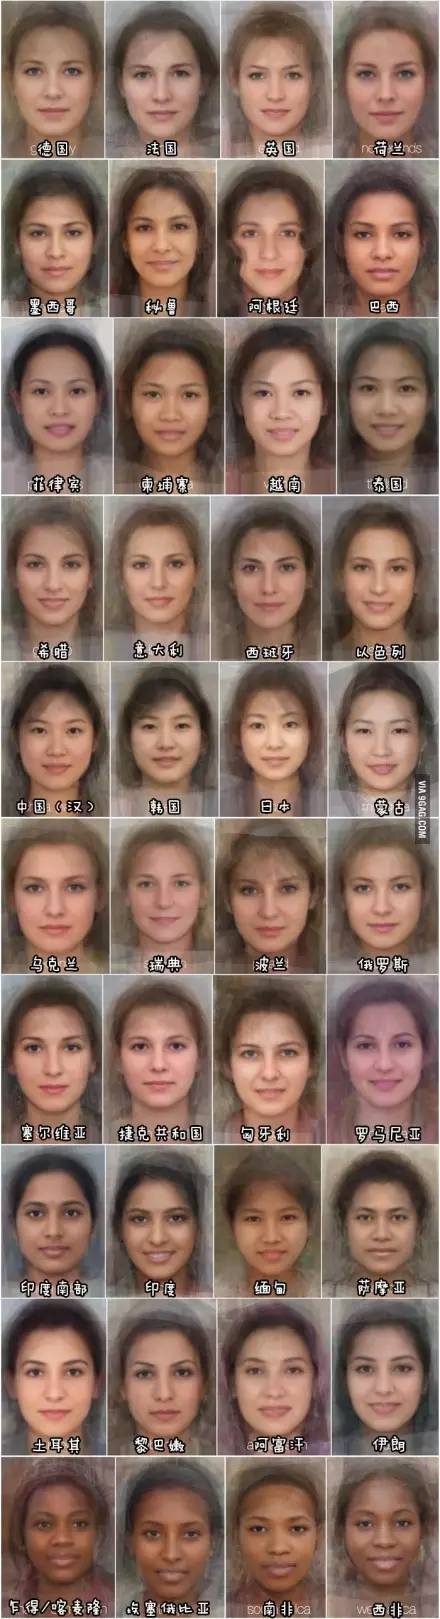 世界平均脸不稀奇中国北方人跟南方人长相差别那么大